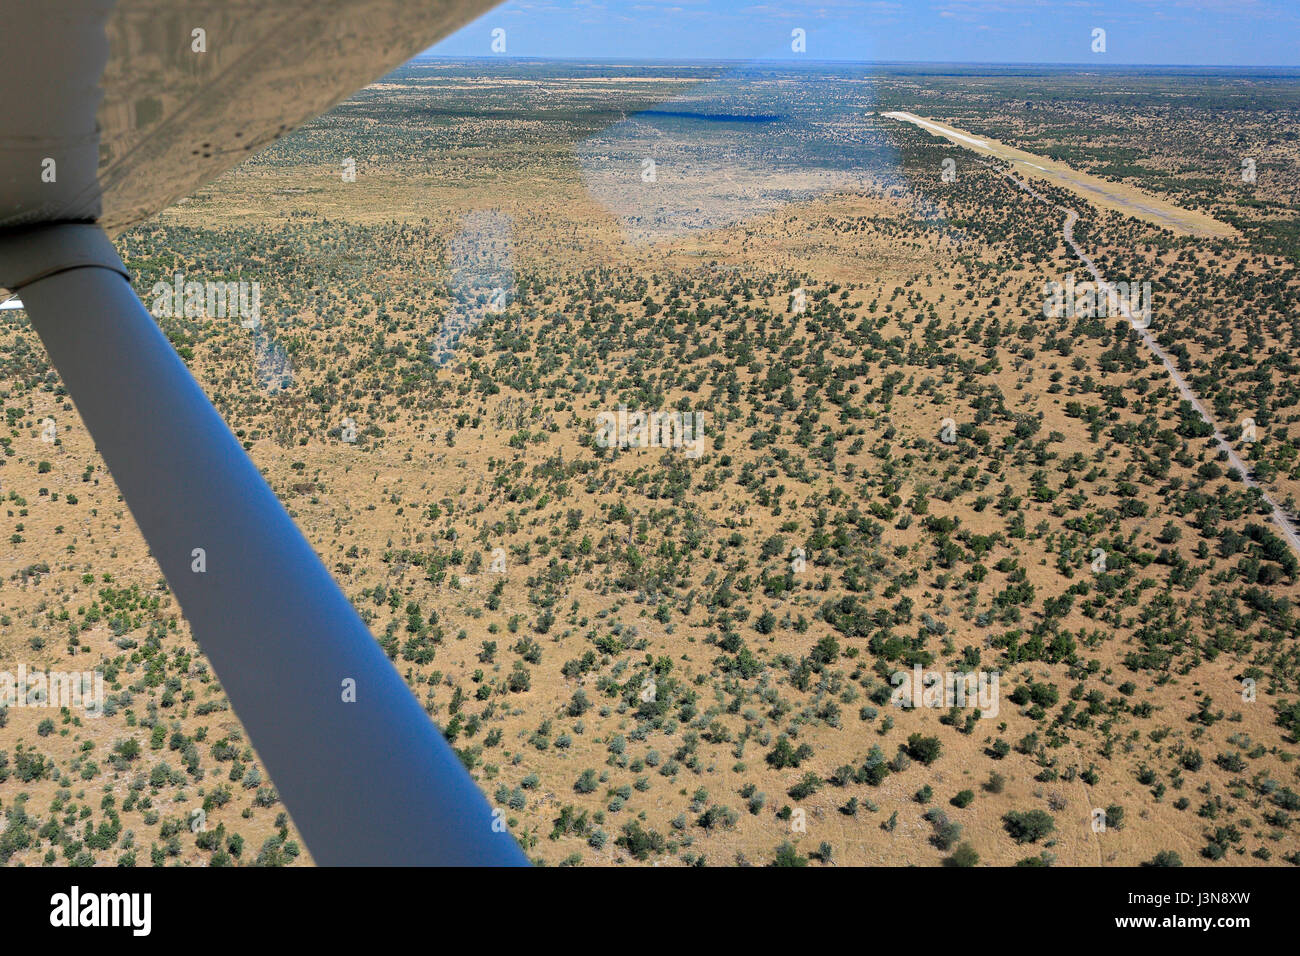 Boccola di aeromobili, pista di atterraggio per aerei, Savute, Botswana, Africa Foto Stock